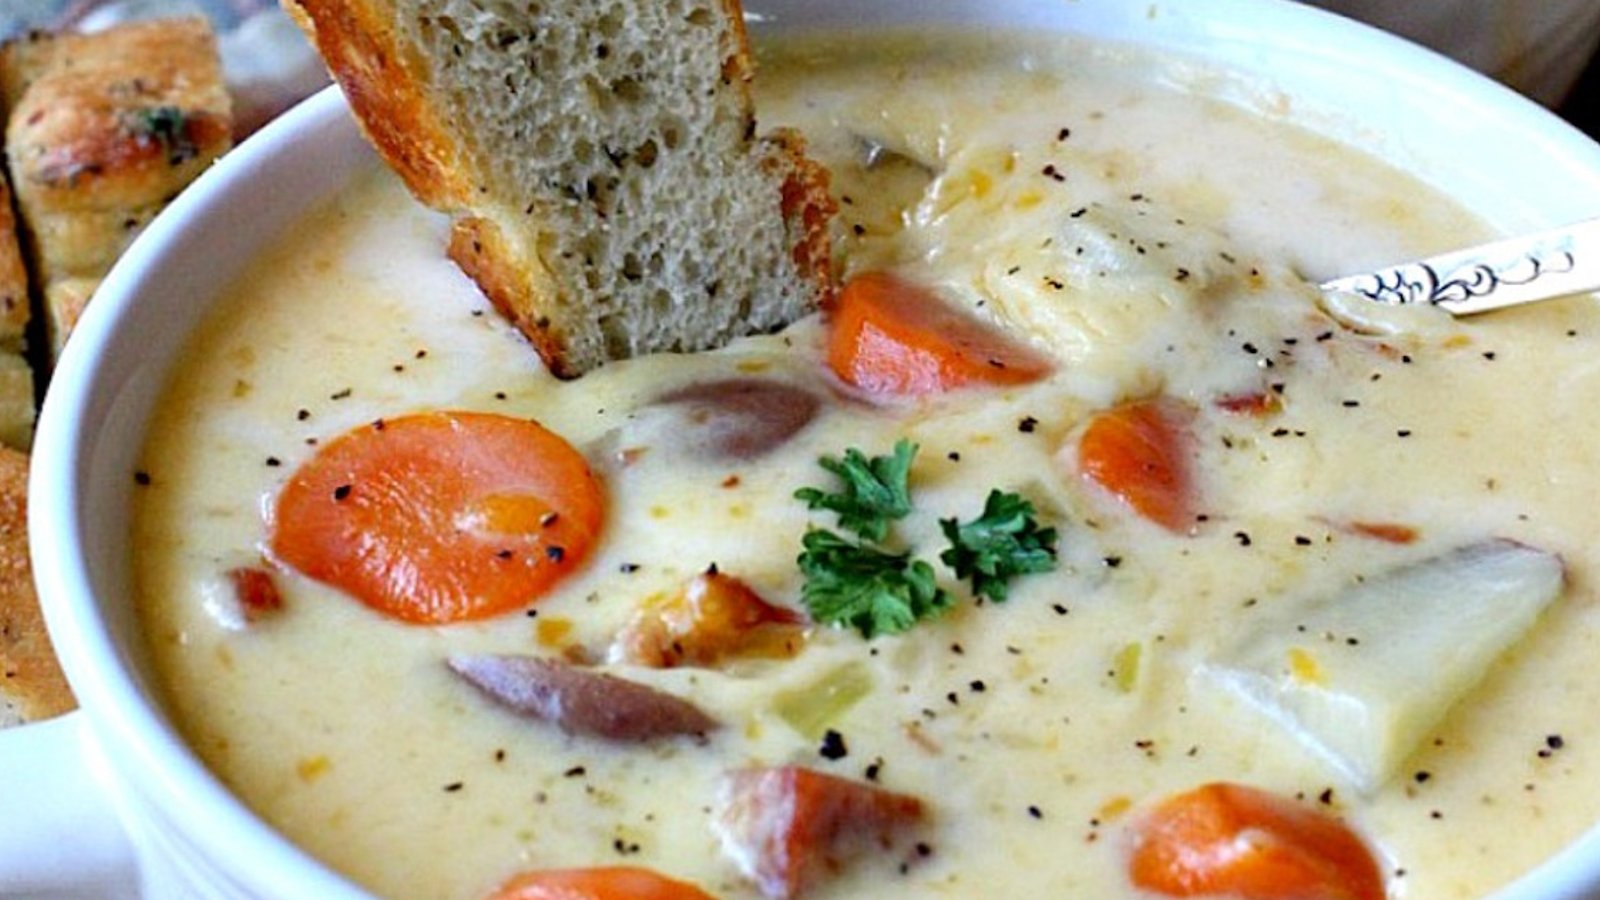 Des Français la nomment la « soupe canadienne », mais peu importe sa réelle origine, elle est délicieuse!